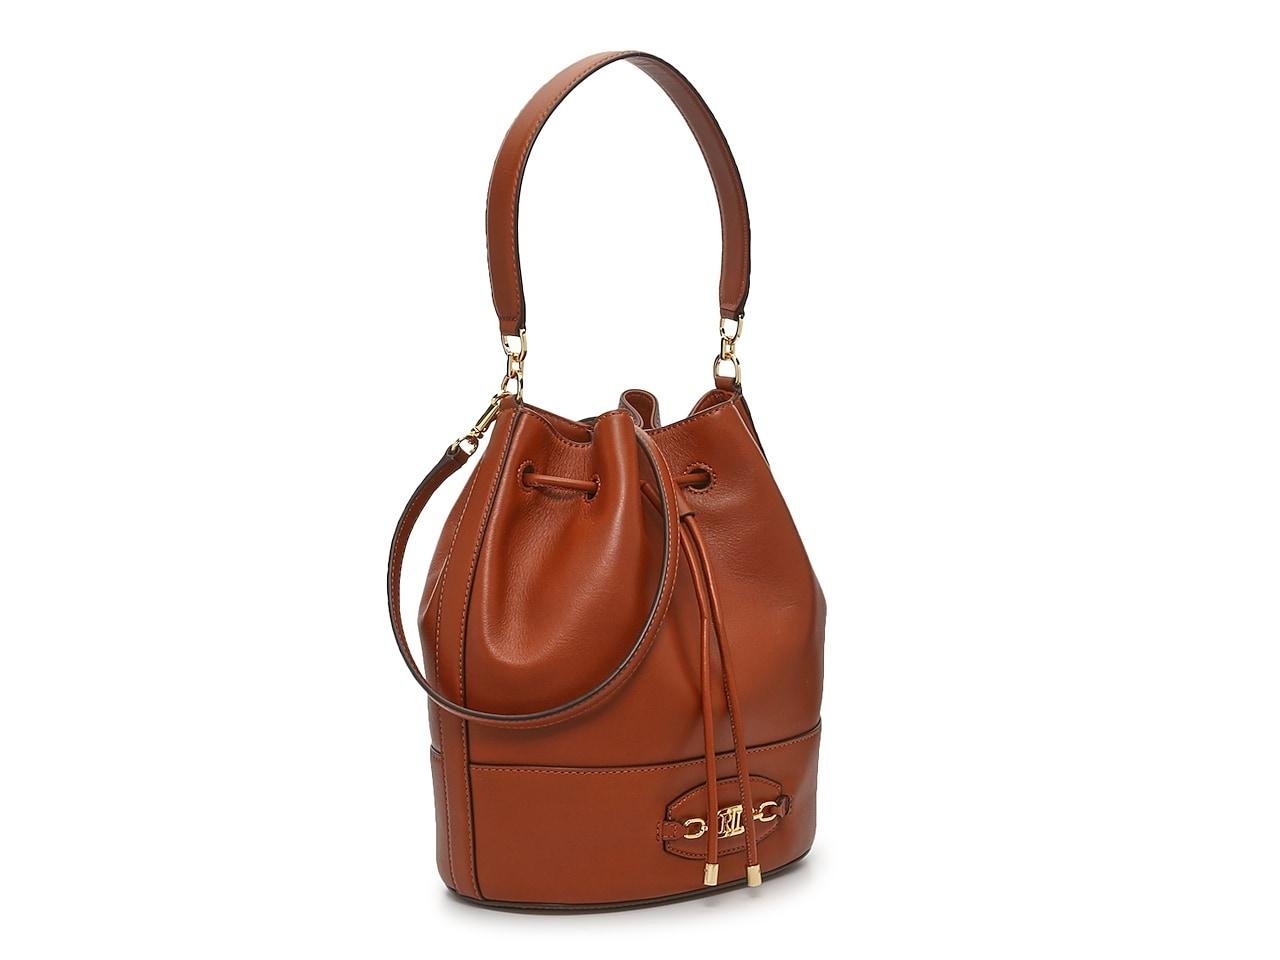 Lauren by Ralph Lauren Andie 25 Leather Bucket Bag in Brown | Lyst